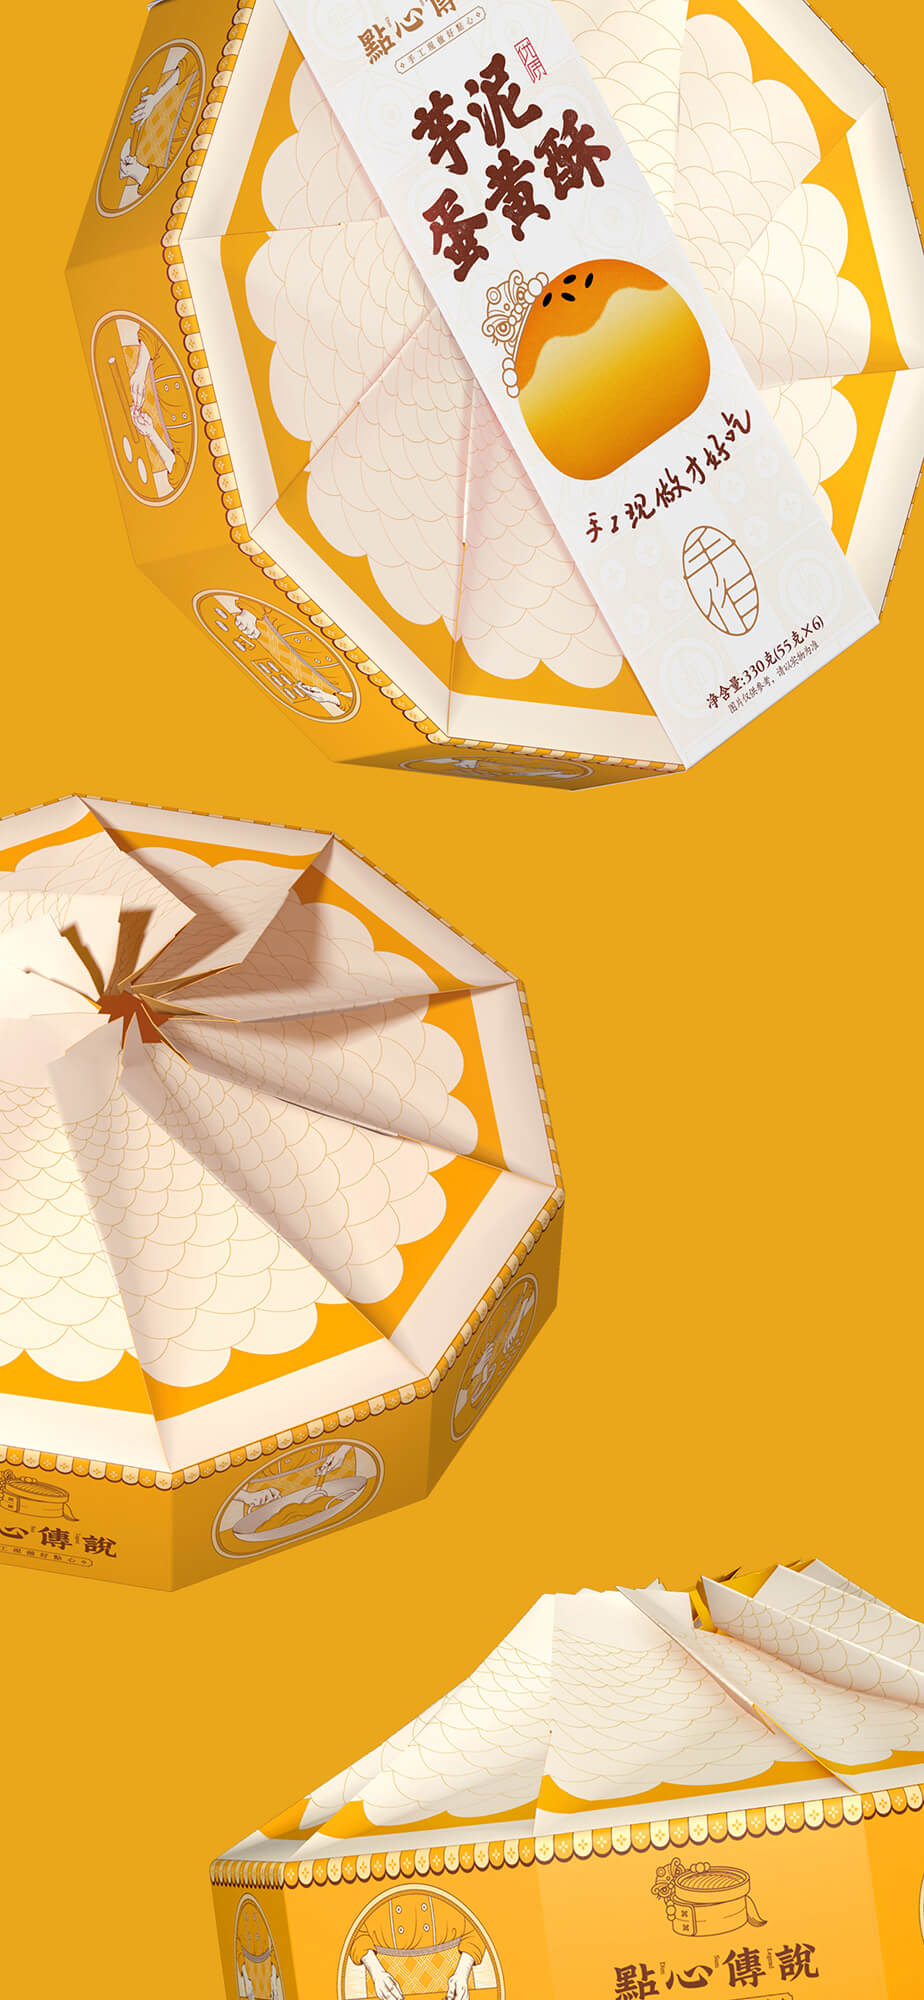 包装即是卖点-蛋黄酥包装结构创新整出大卖点 |厚启